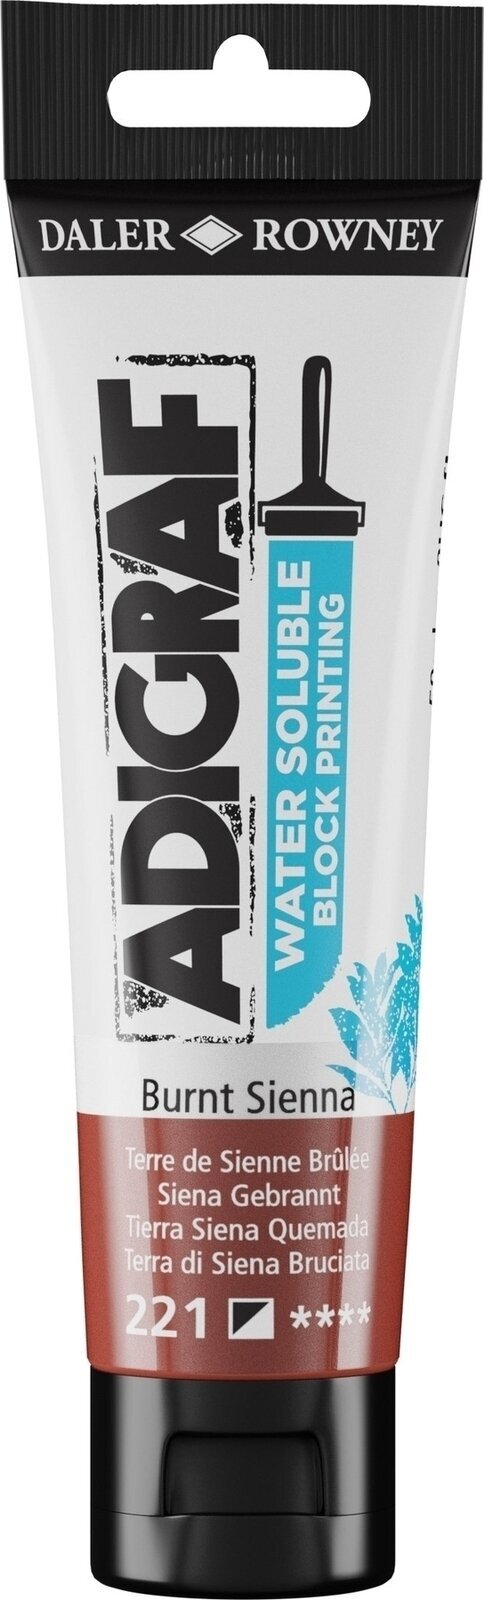 Verf voor linosnede Daler Rowney Adigraf Block Printing Water Soluble Colour Verf voor linosnede Burnt Sienna 59 ml